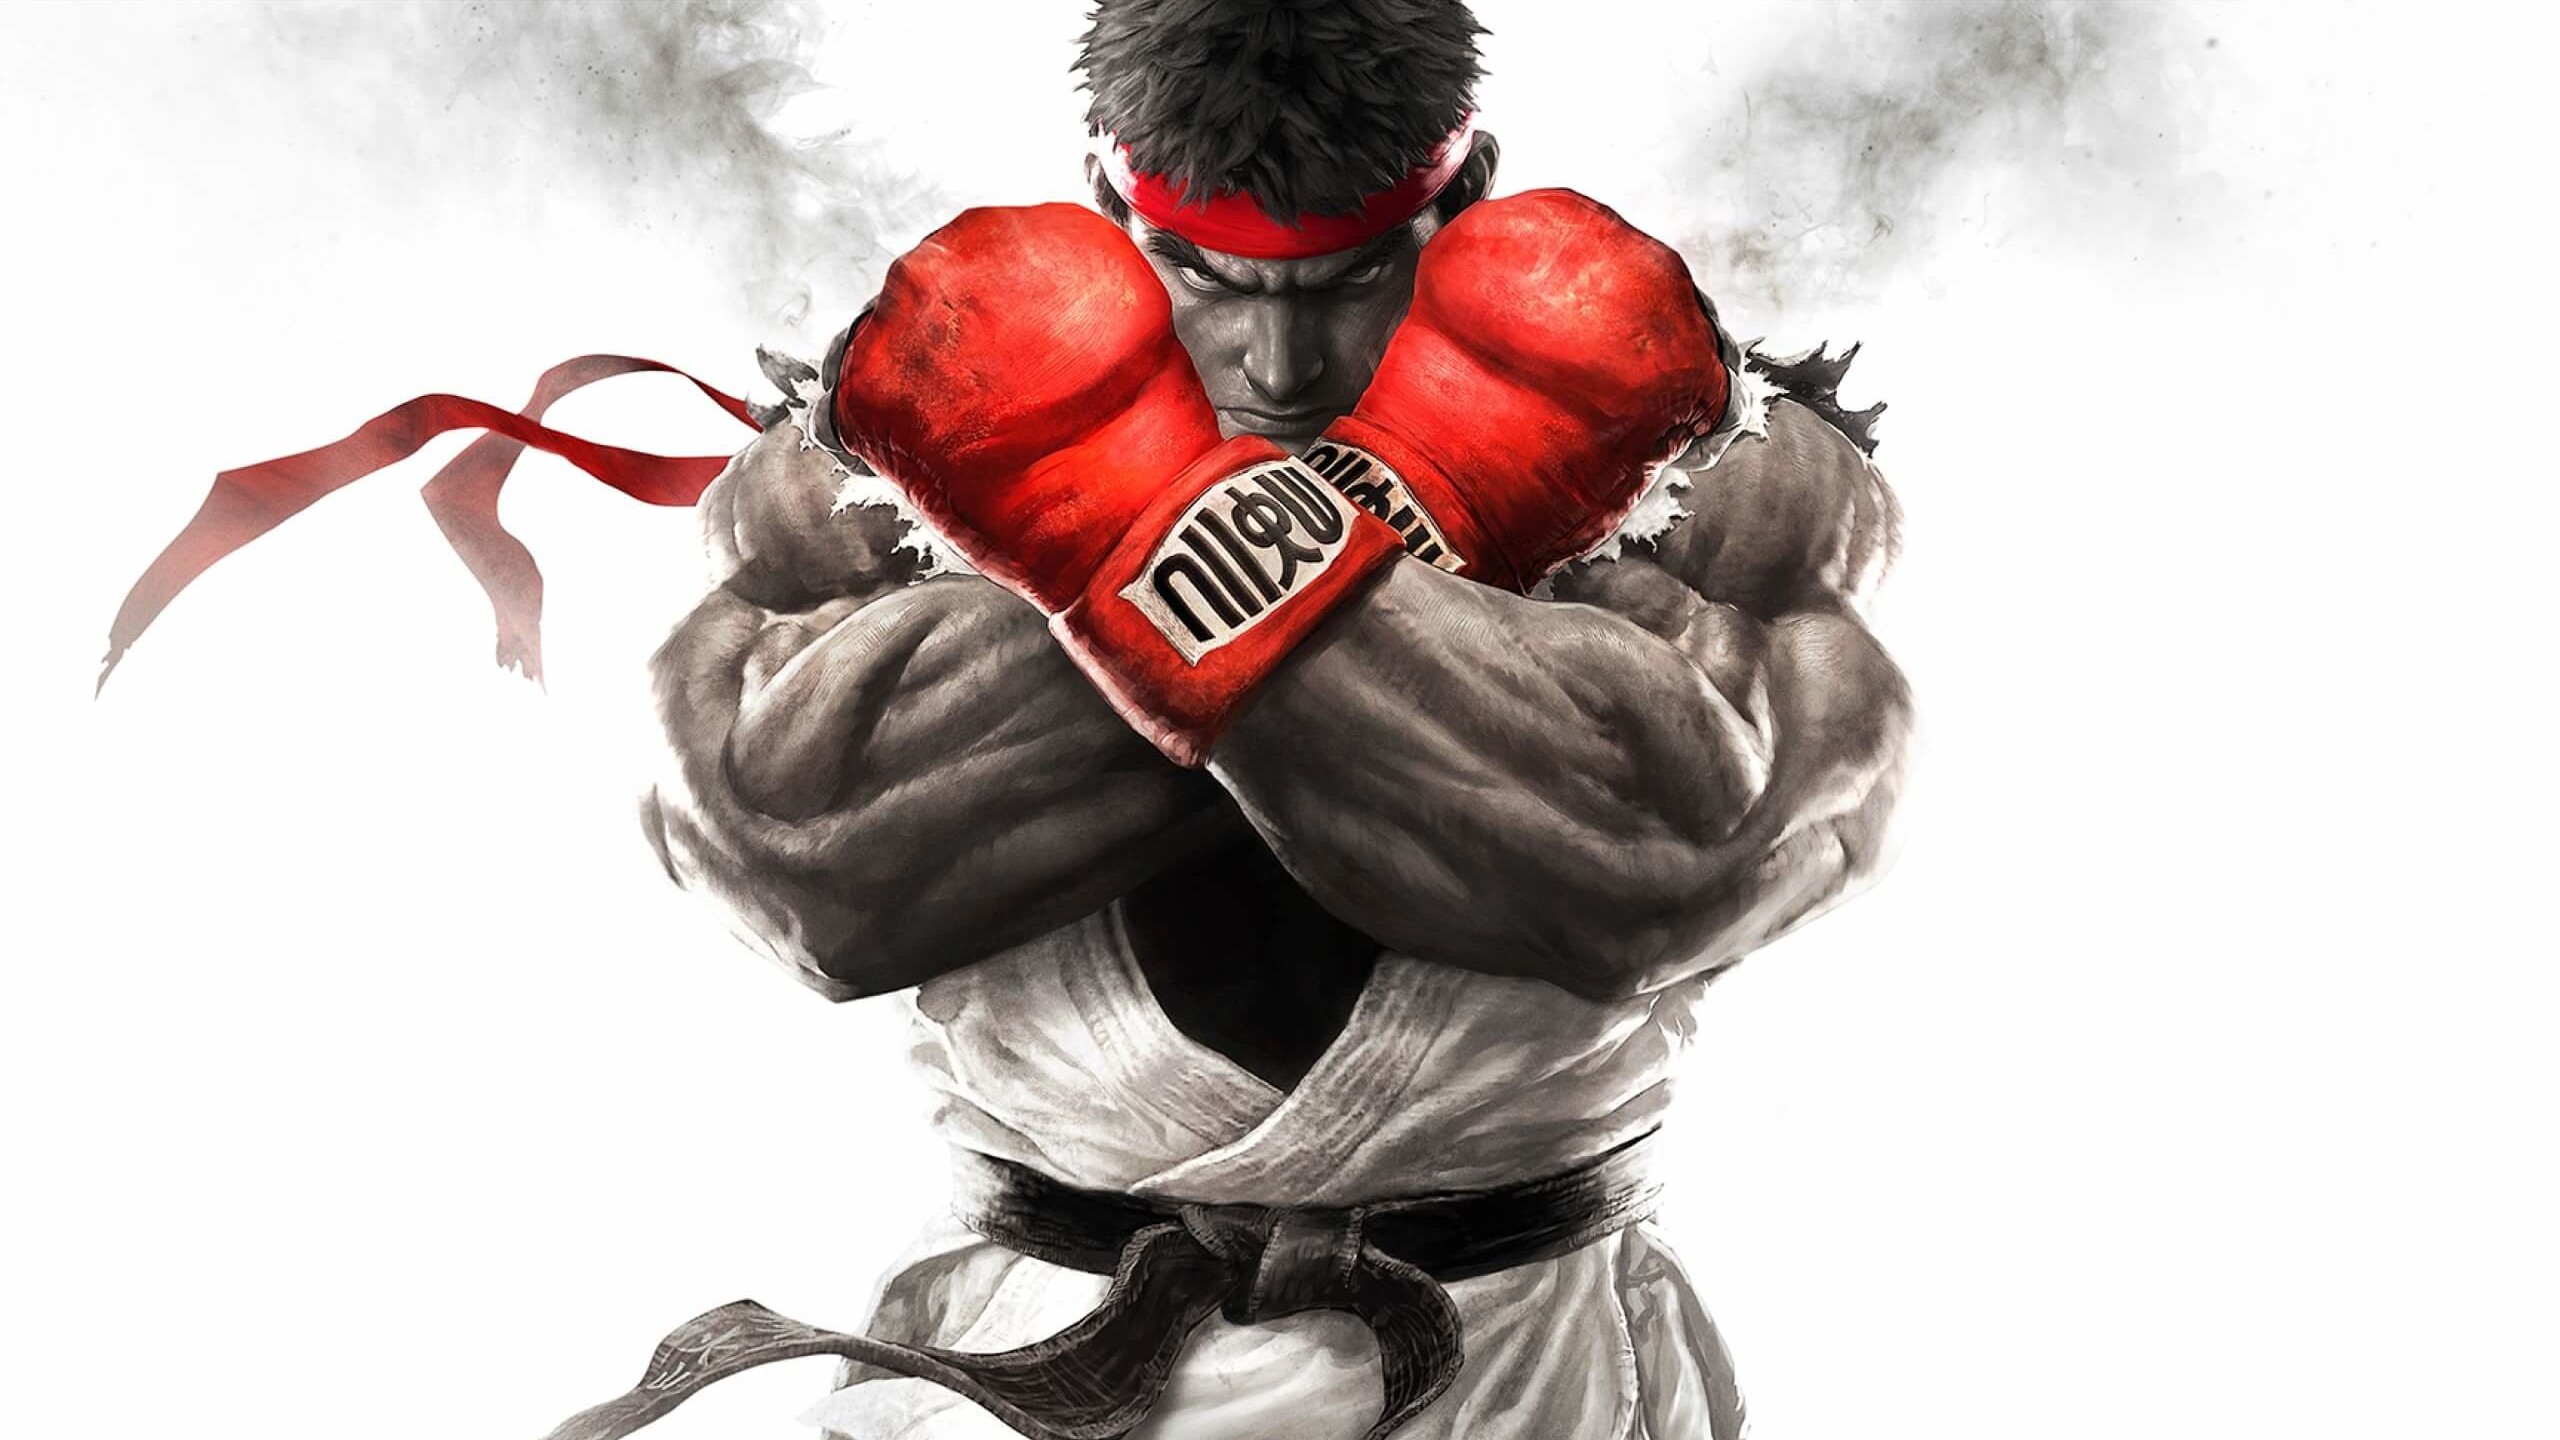 Ryu - Street Fighter Wallpaper for Social Media YouTube Channel Art